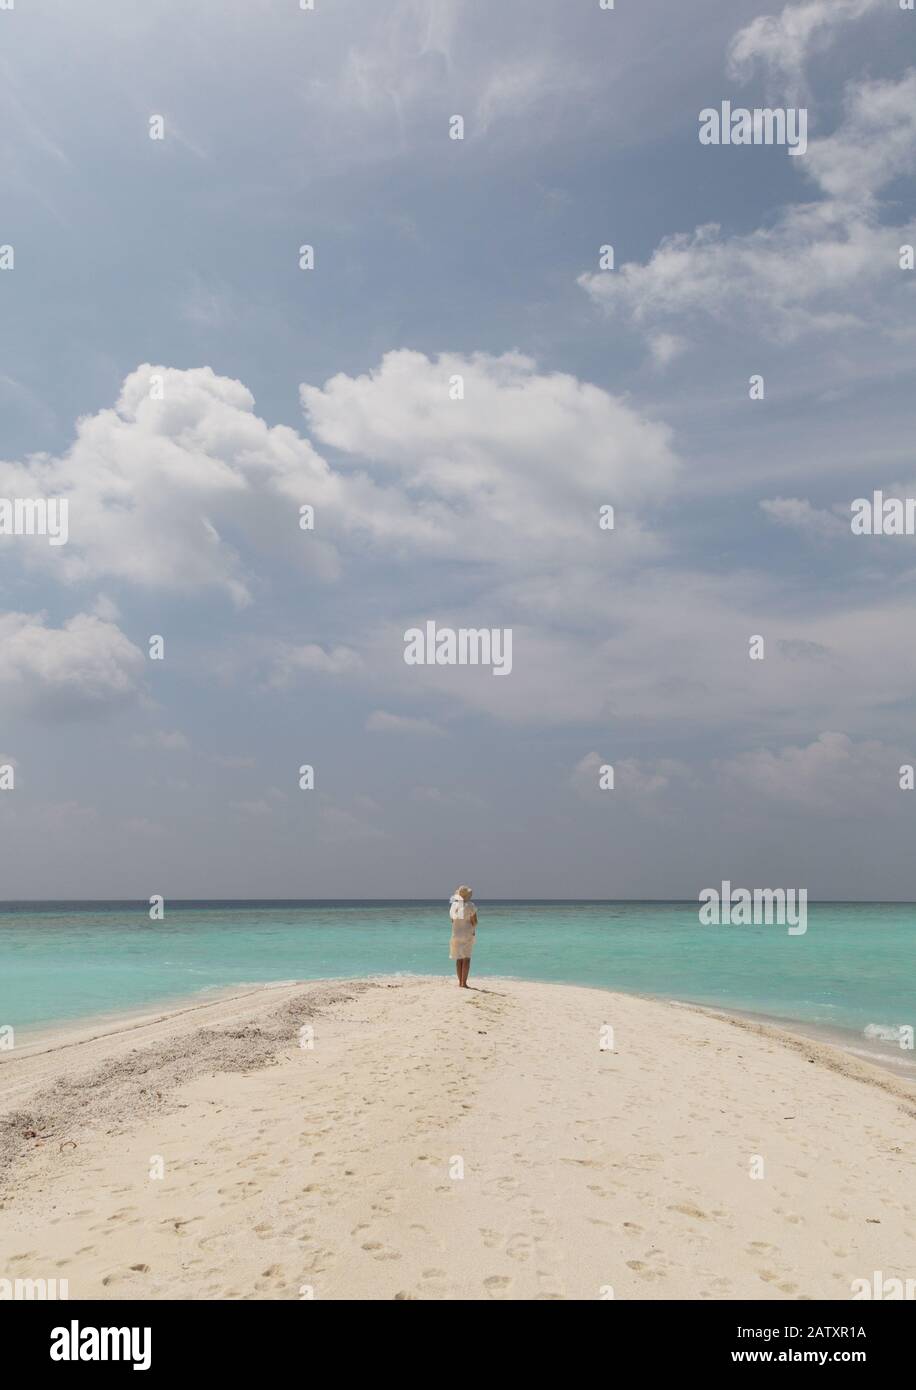 Concept Travel - Donna sulla spiaggia; una donna solitario che si erge su una spiaggia tropicale con sabbia bianca, cielo blu e acqua turchese, vista posteriore, Maldive, Asia Foto Stock